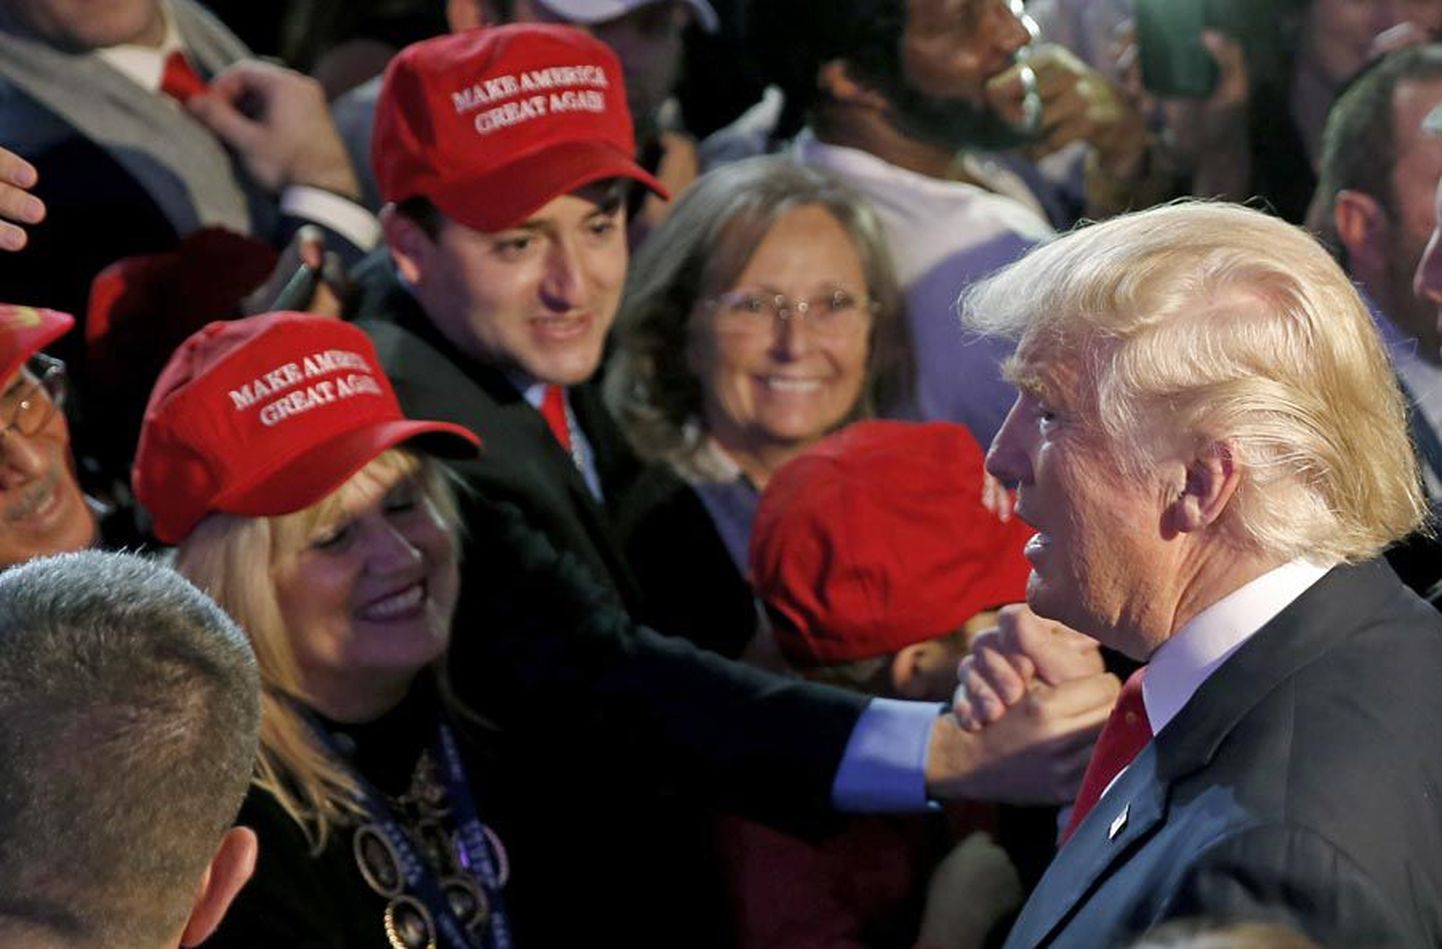 USA presidendiks valitud Donald Trump tervitas toetajaid. Võidukõnes tõotas ta olla kõikide ameeriklaste president.